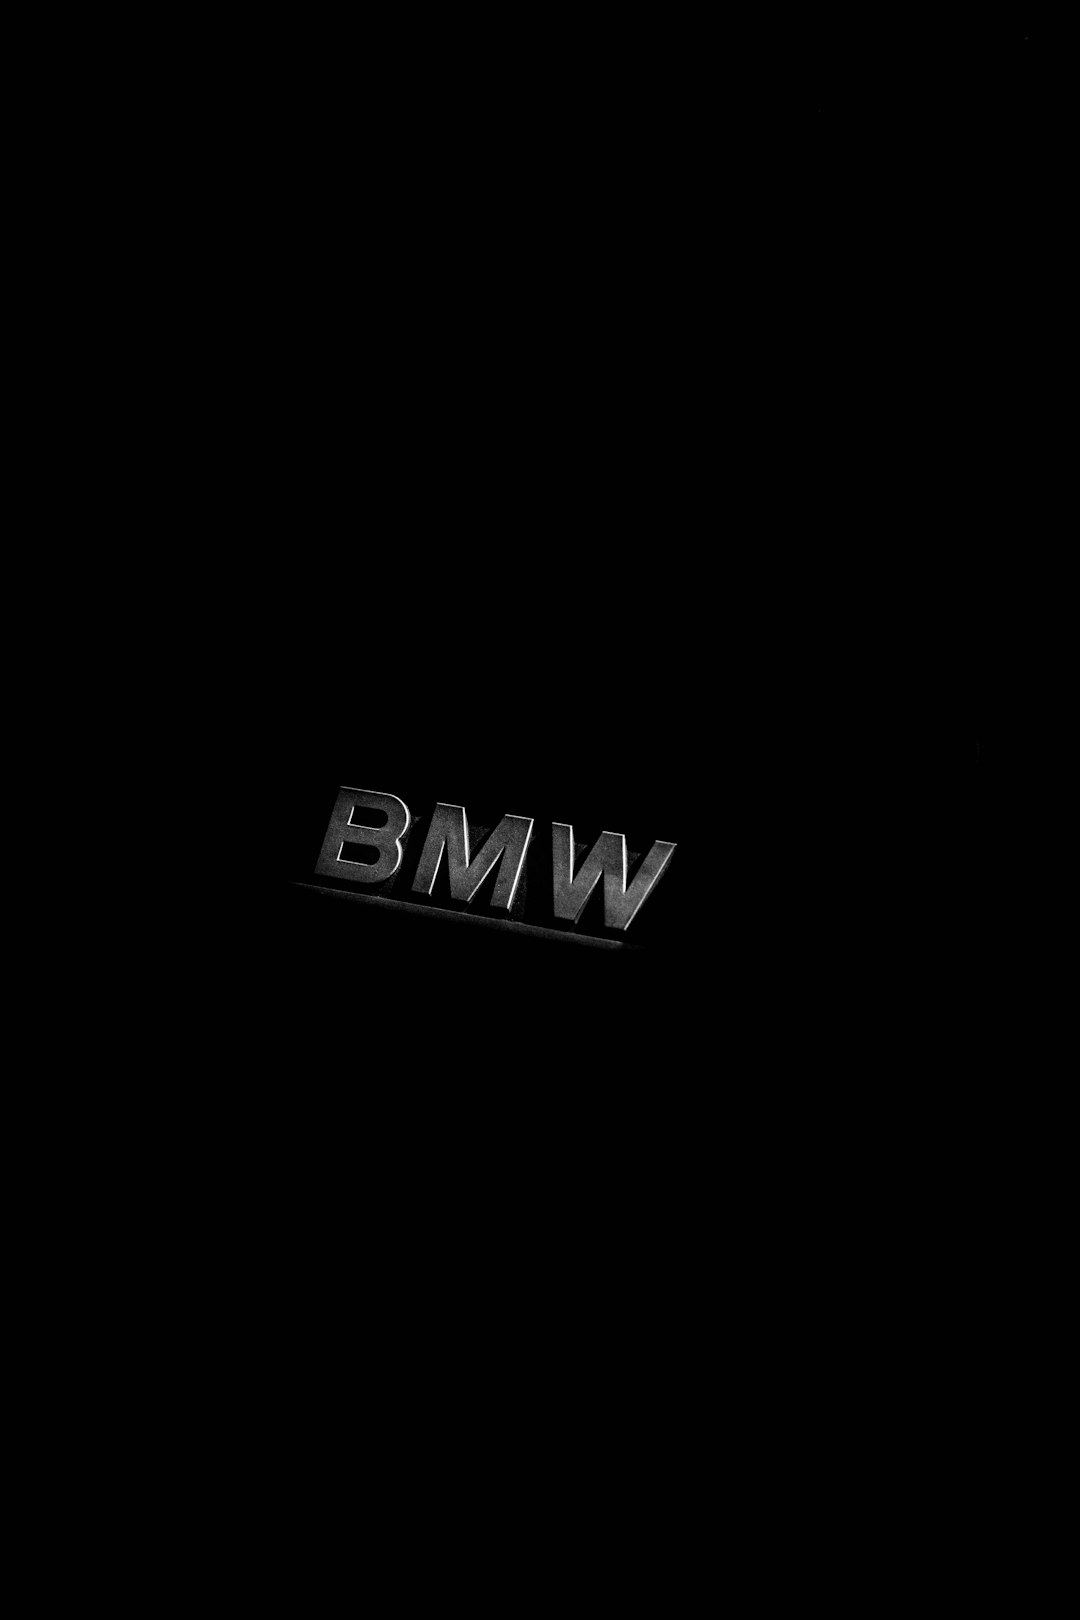 BMW emblem on black background